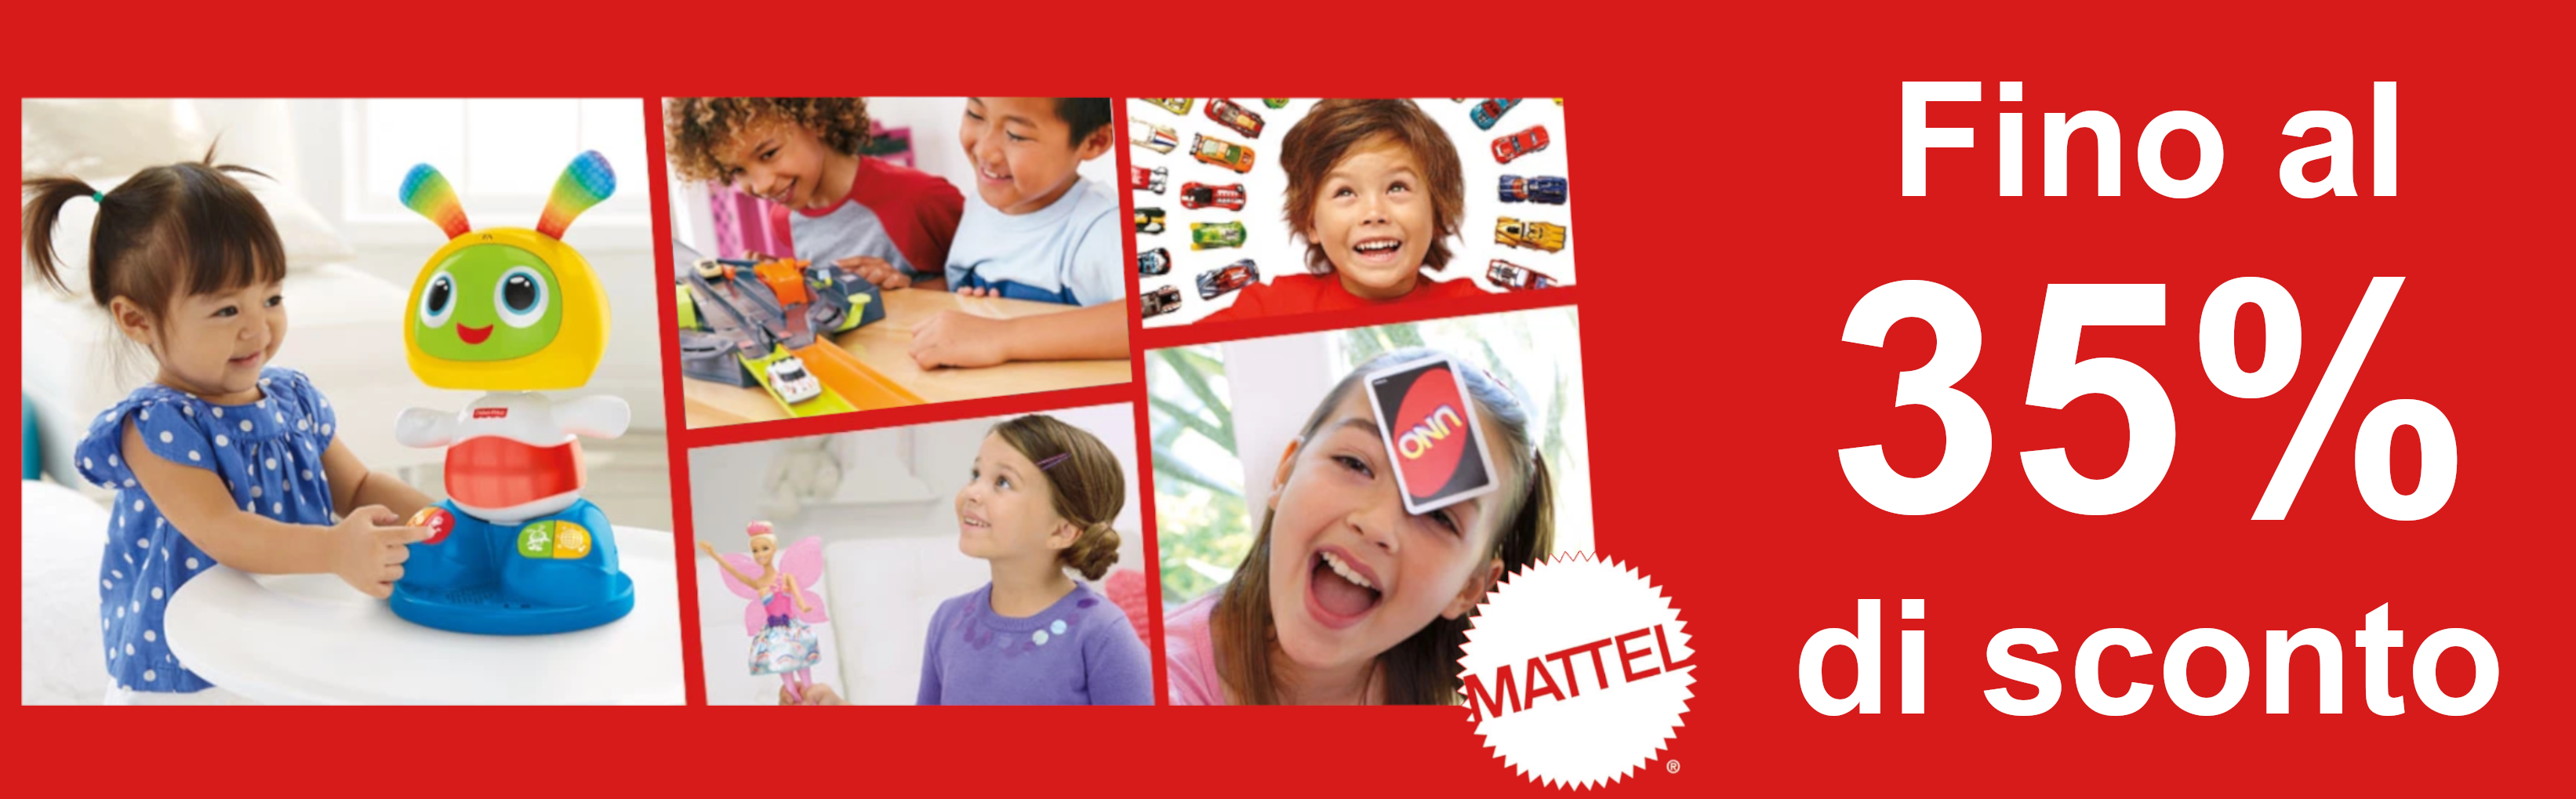 Banner Mattel - Scopri la nostra promozione!